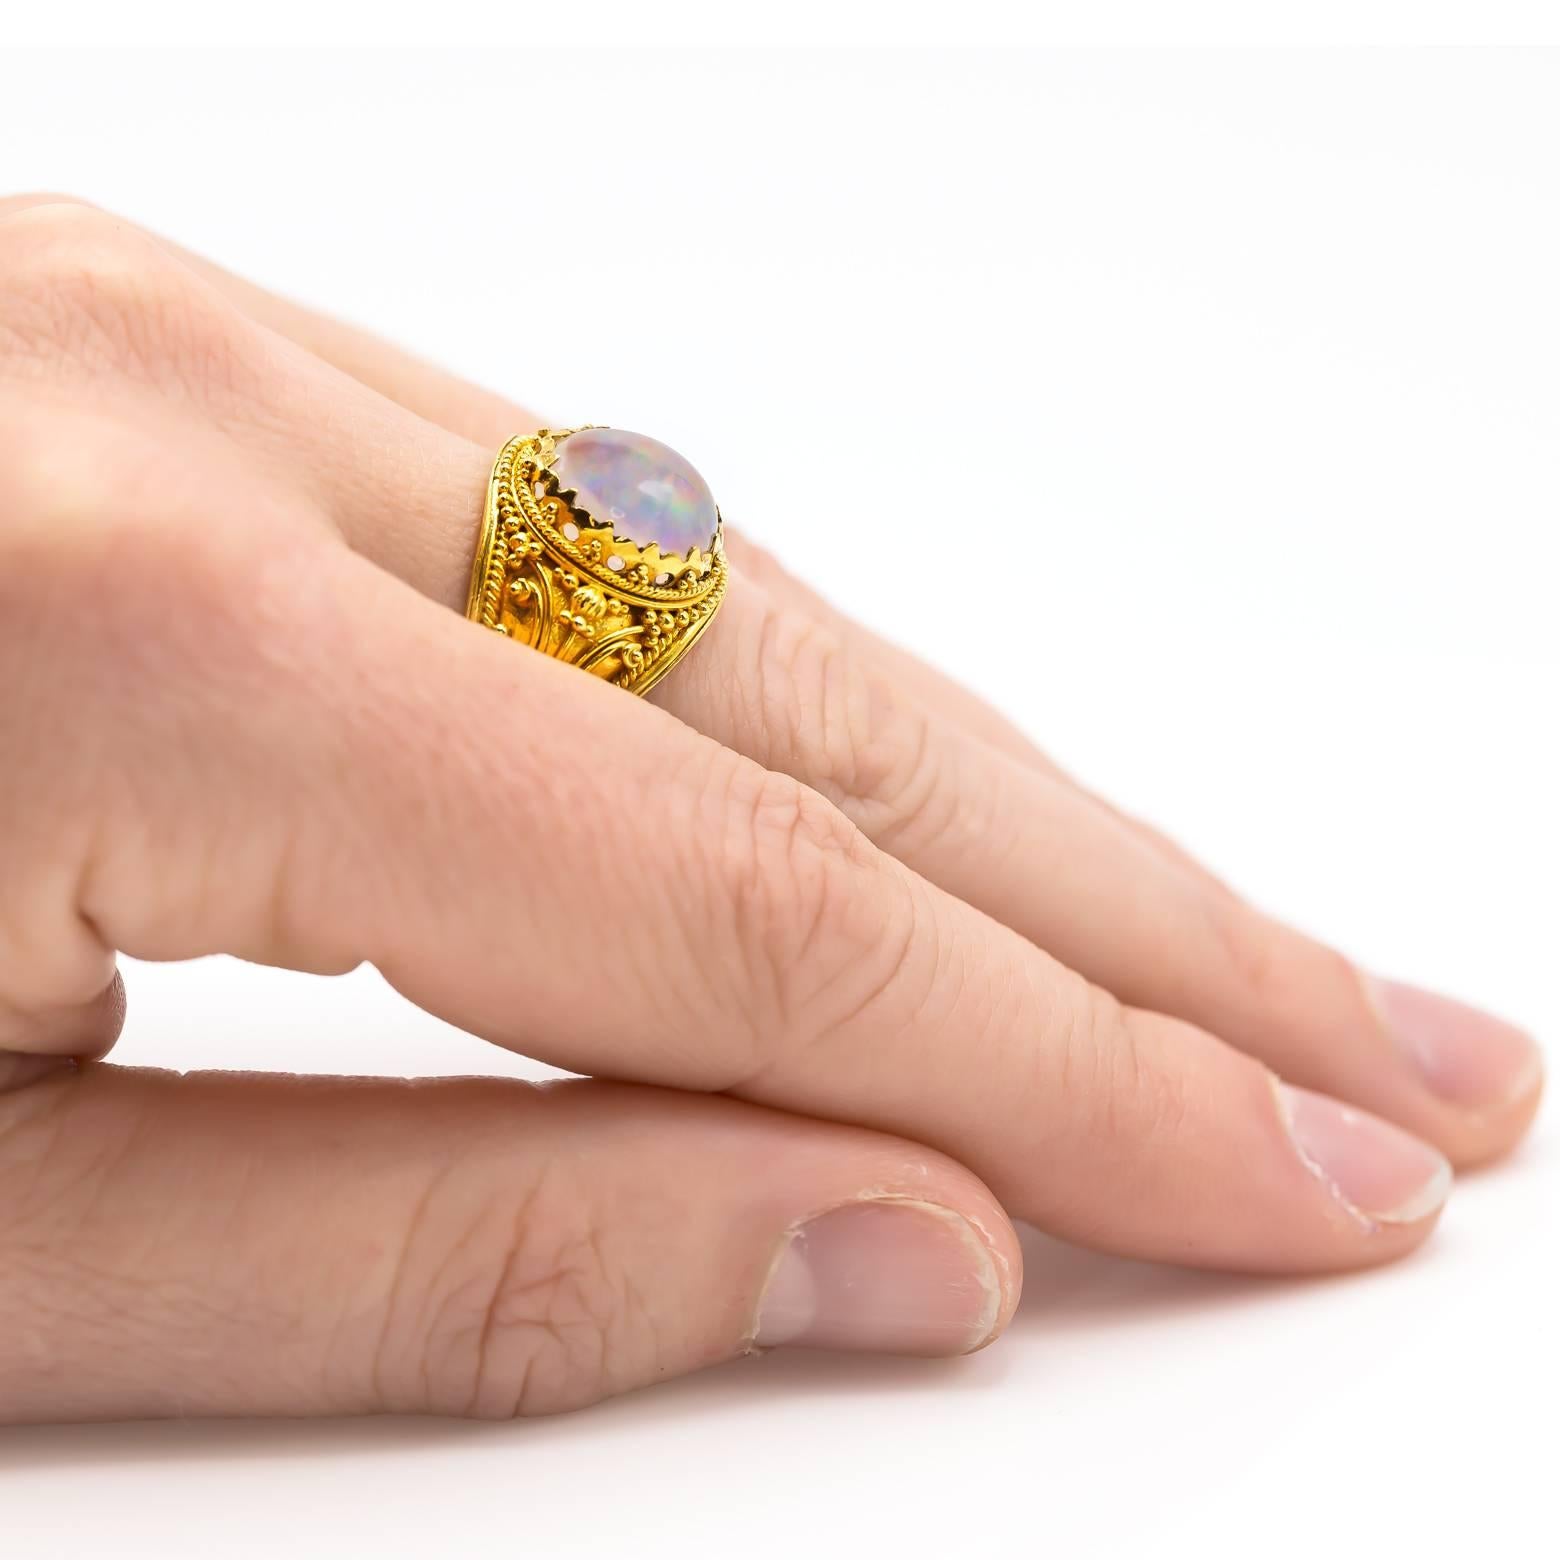 Dieser wunderschöne, verschlungene Jelly-Opal-Ring glänzt in 22 Karat Gelbgold. Detailliert und glänzend glänzt das Gold mit Spiralen und Wirbeln in traditioneller balinesischer Manier. Regenbögen spiegeln sich in diesem hellen weißen Cabochon-Opal,